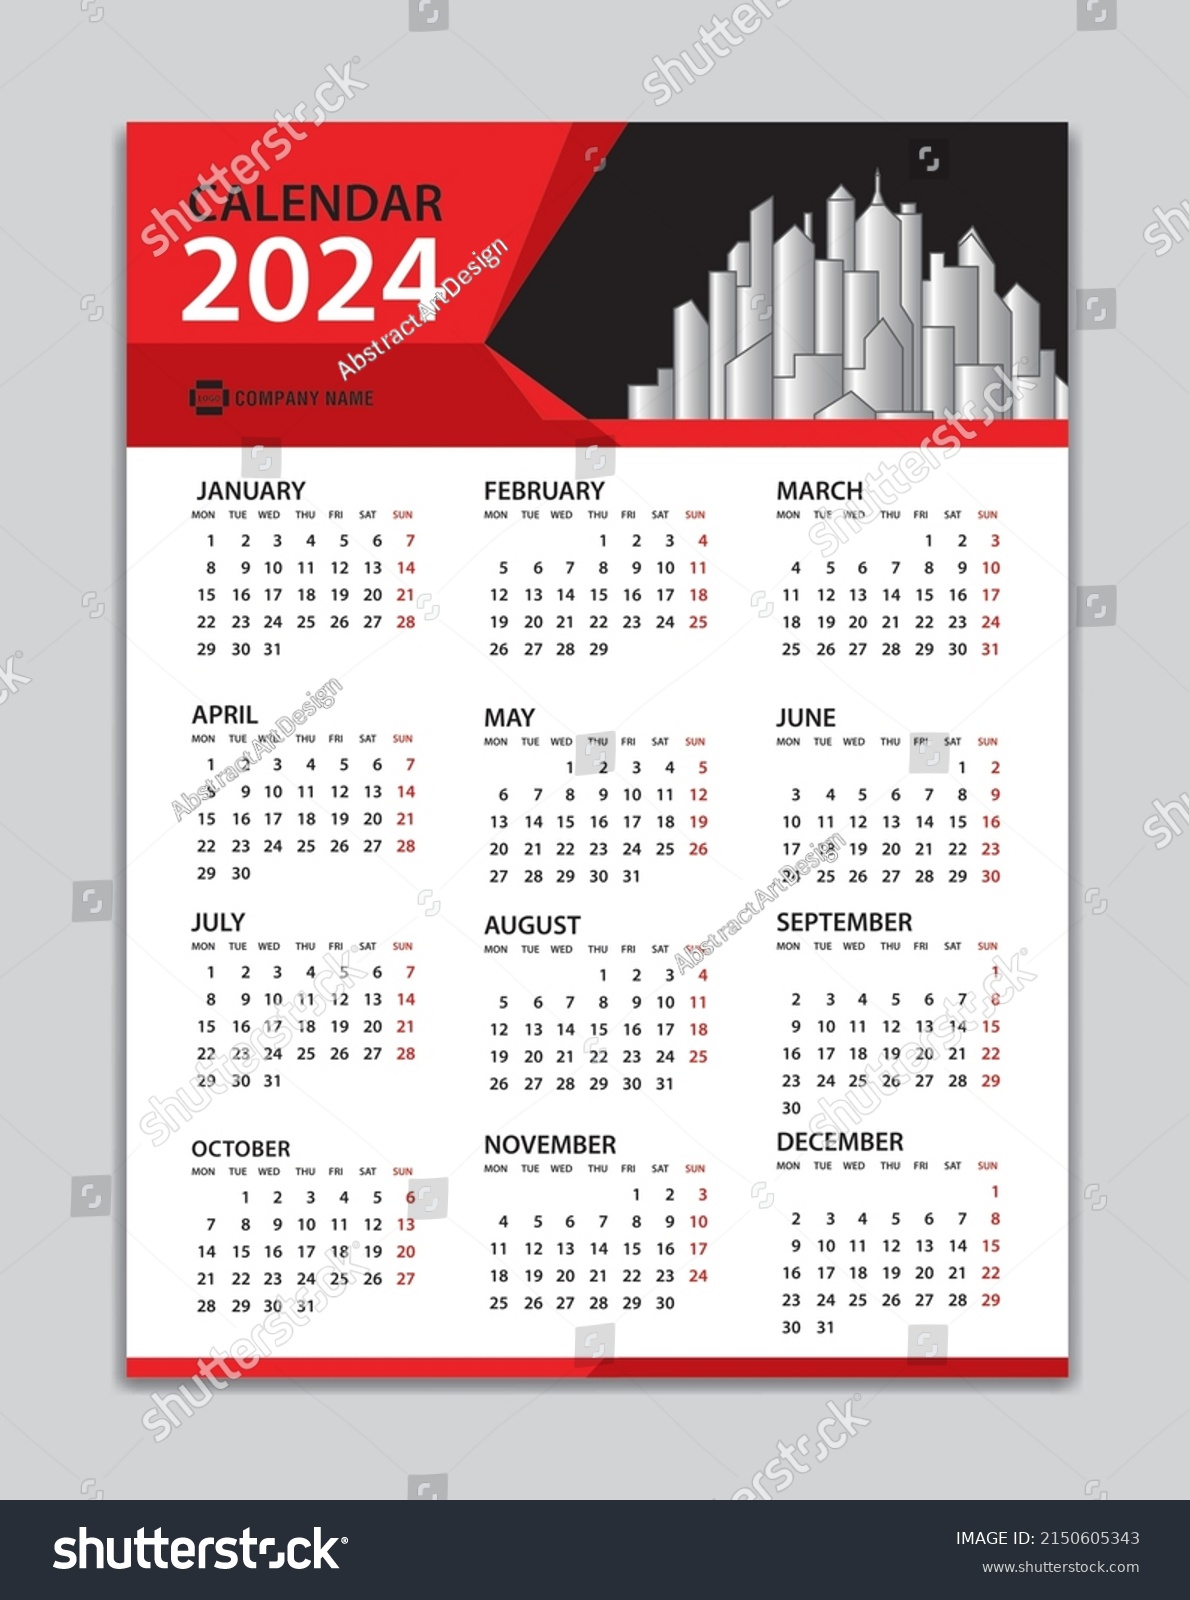 Calendar 2024 Template Wall Calendar 2024 Stock Vector (Royalty Free ...